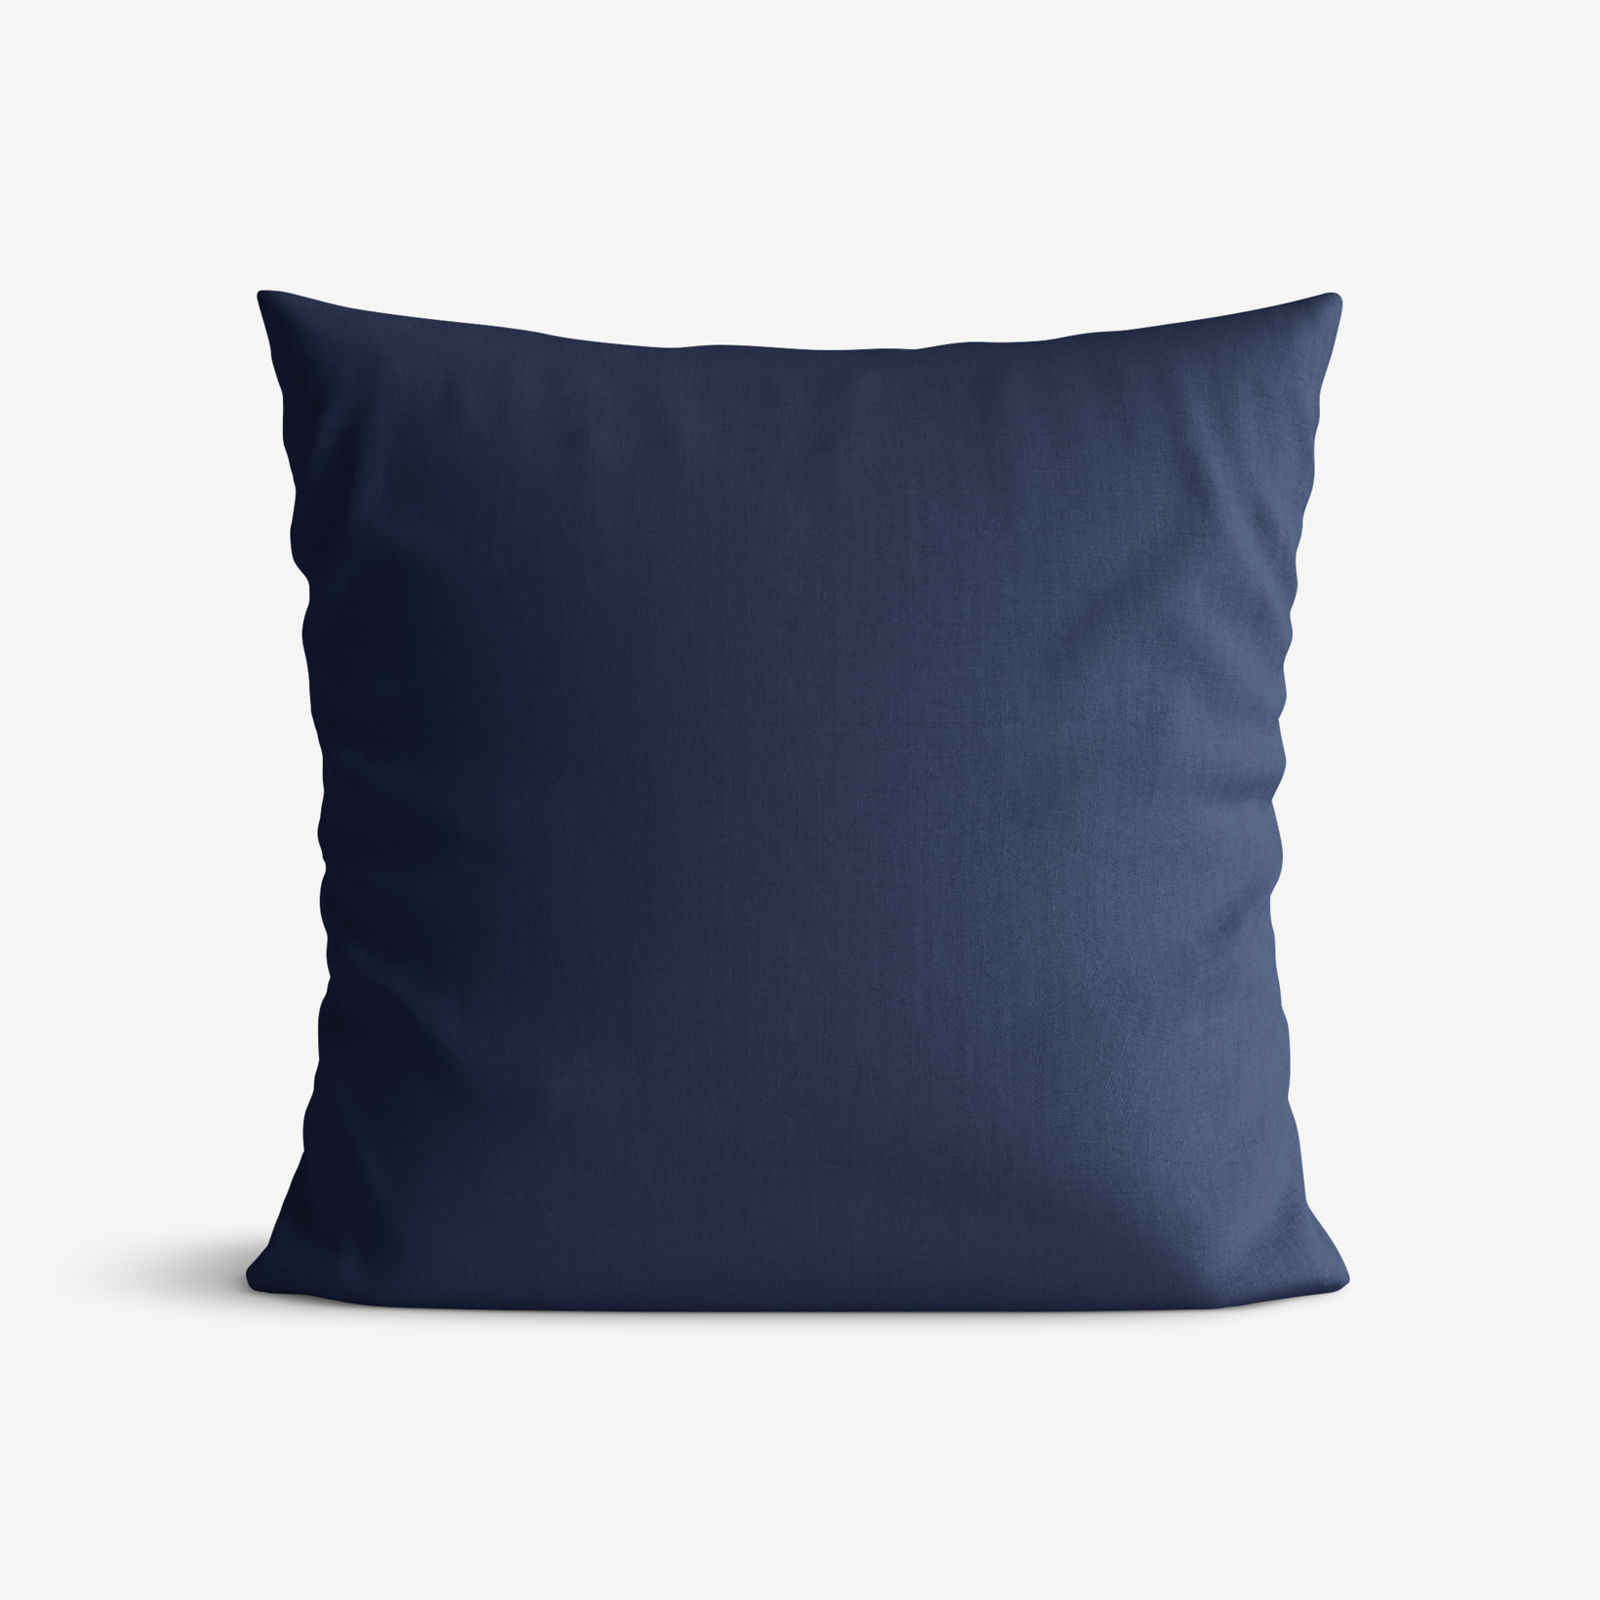 Poszewka na poduszkę dekoracyjna Loneta - atramentowo-niebieska